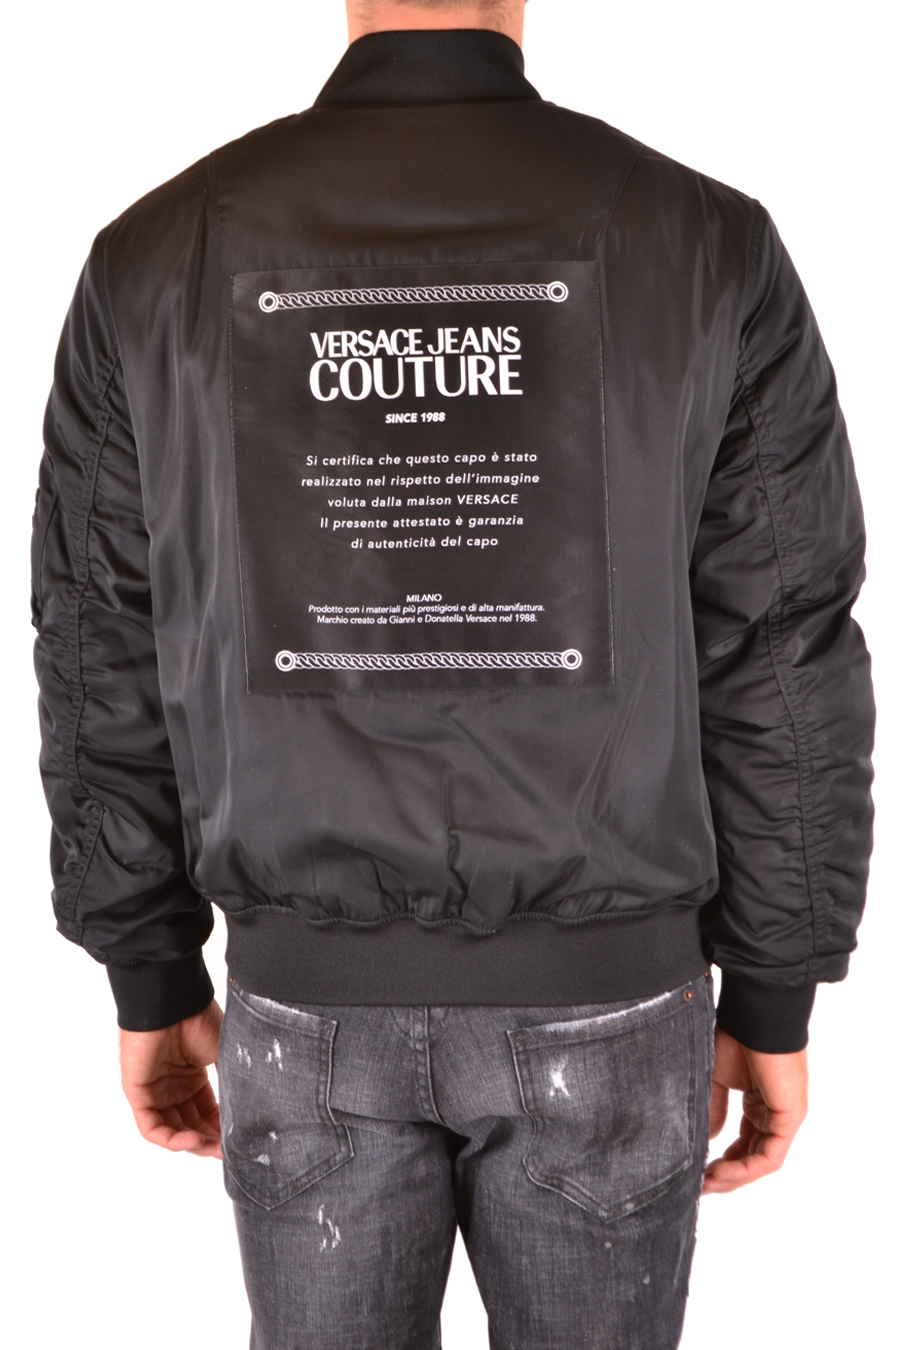 VERSACE JEANS COUTURE Jackets | ViganoBoutique.com